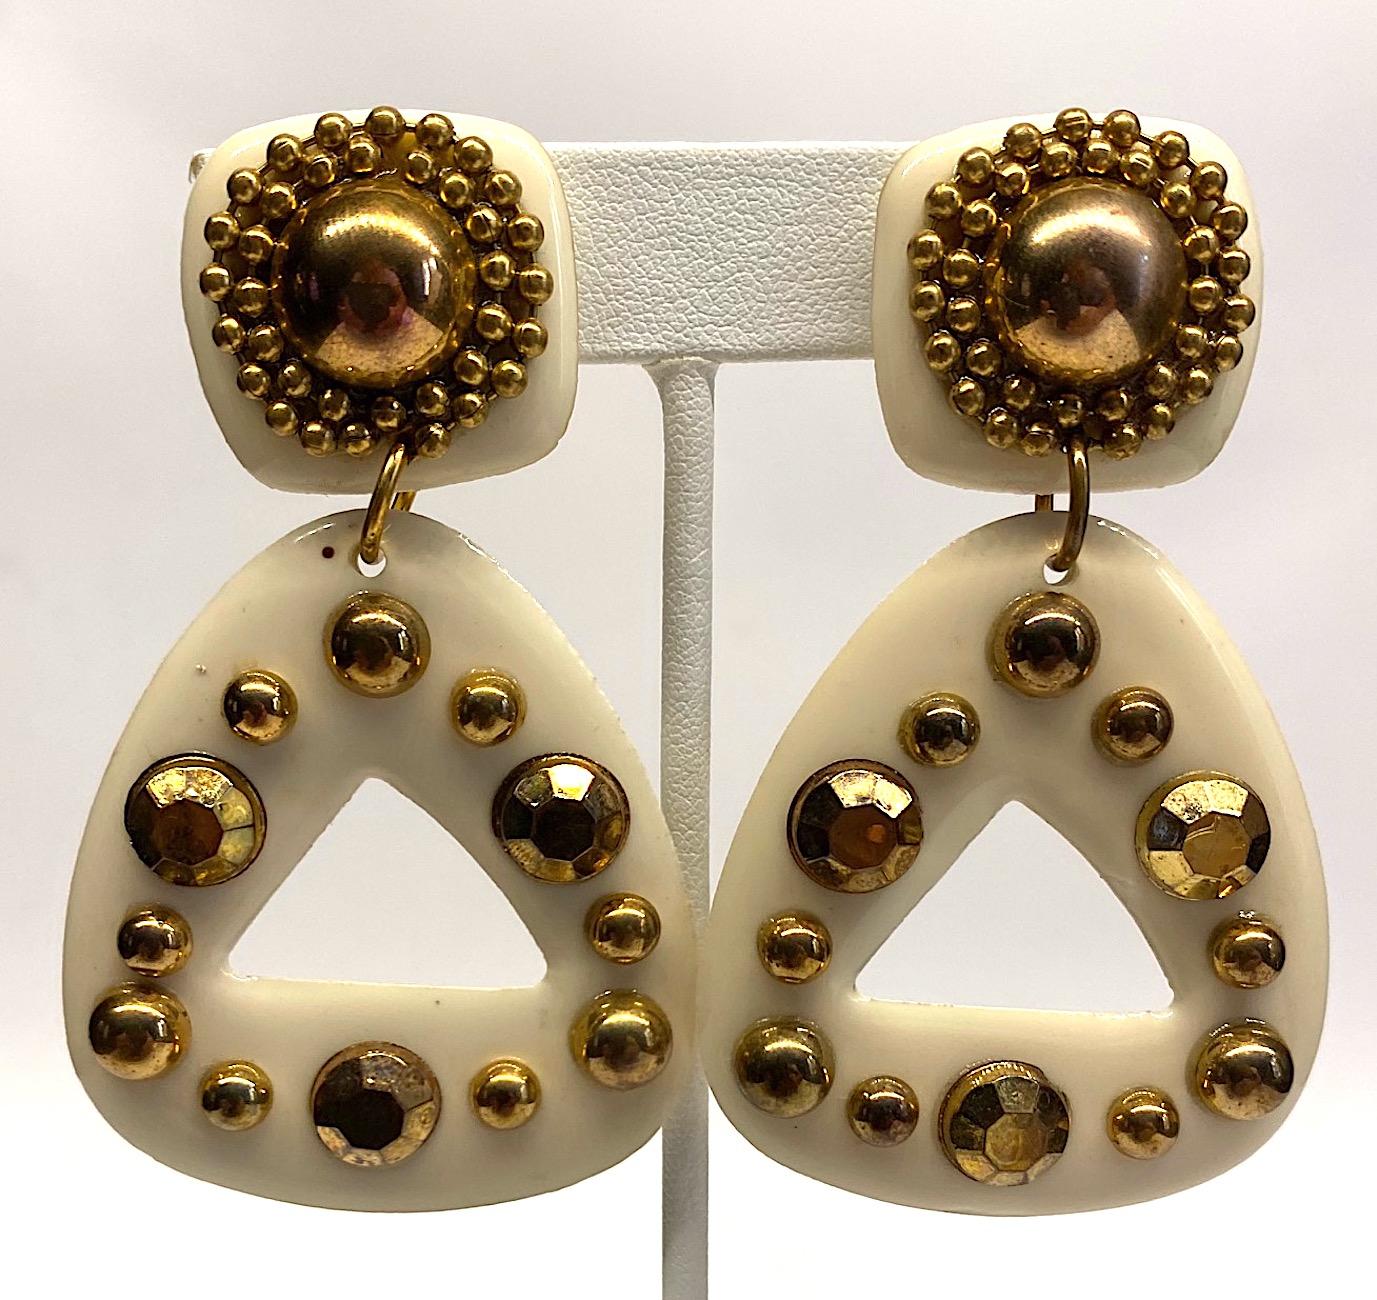 Une paire très élégante de boucles d'oreilles en résine ou en plastique blanc cassé/crème des années 1980. Les boucles d'oreilles sont accentuées par des clous appliqués de couleur or et des cristaux dorés à dos plat. La pièce supérieure avec le